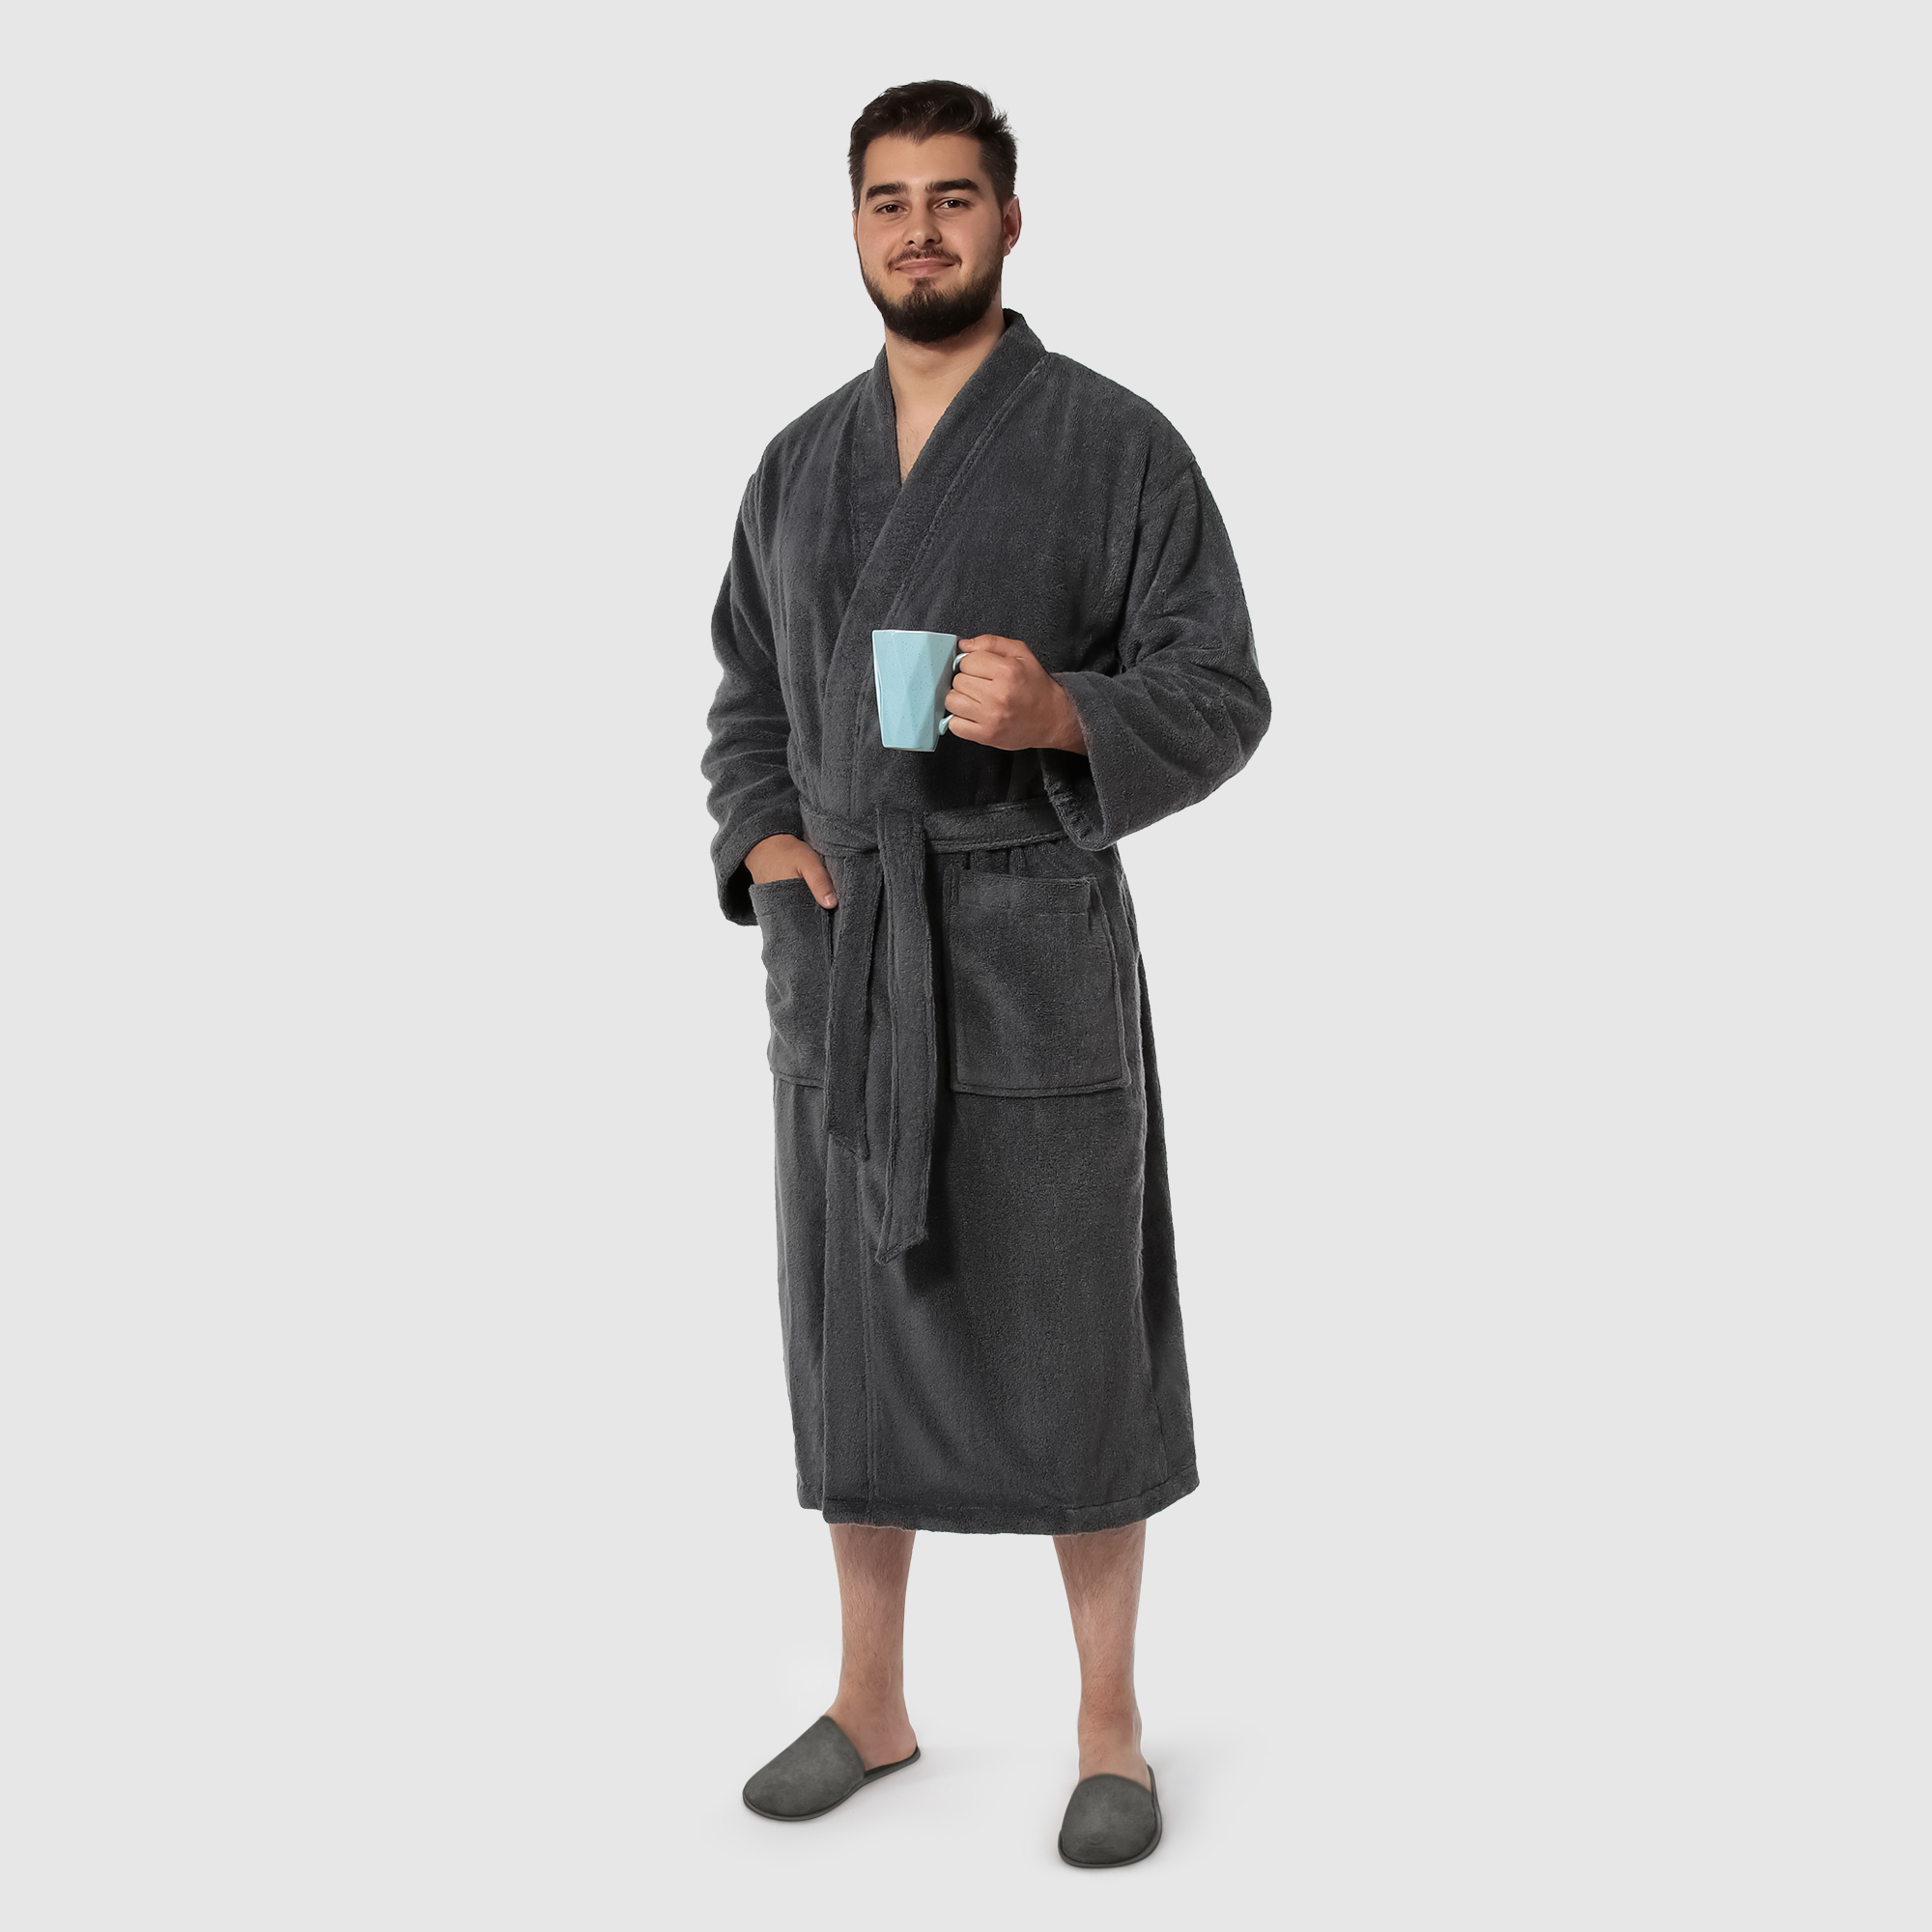 Мужской халат Maisonette Parla тёмно-серый S халат мужской asil sauna brown xxl вафельный с капюшоном